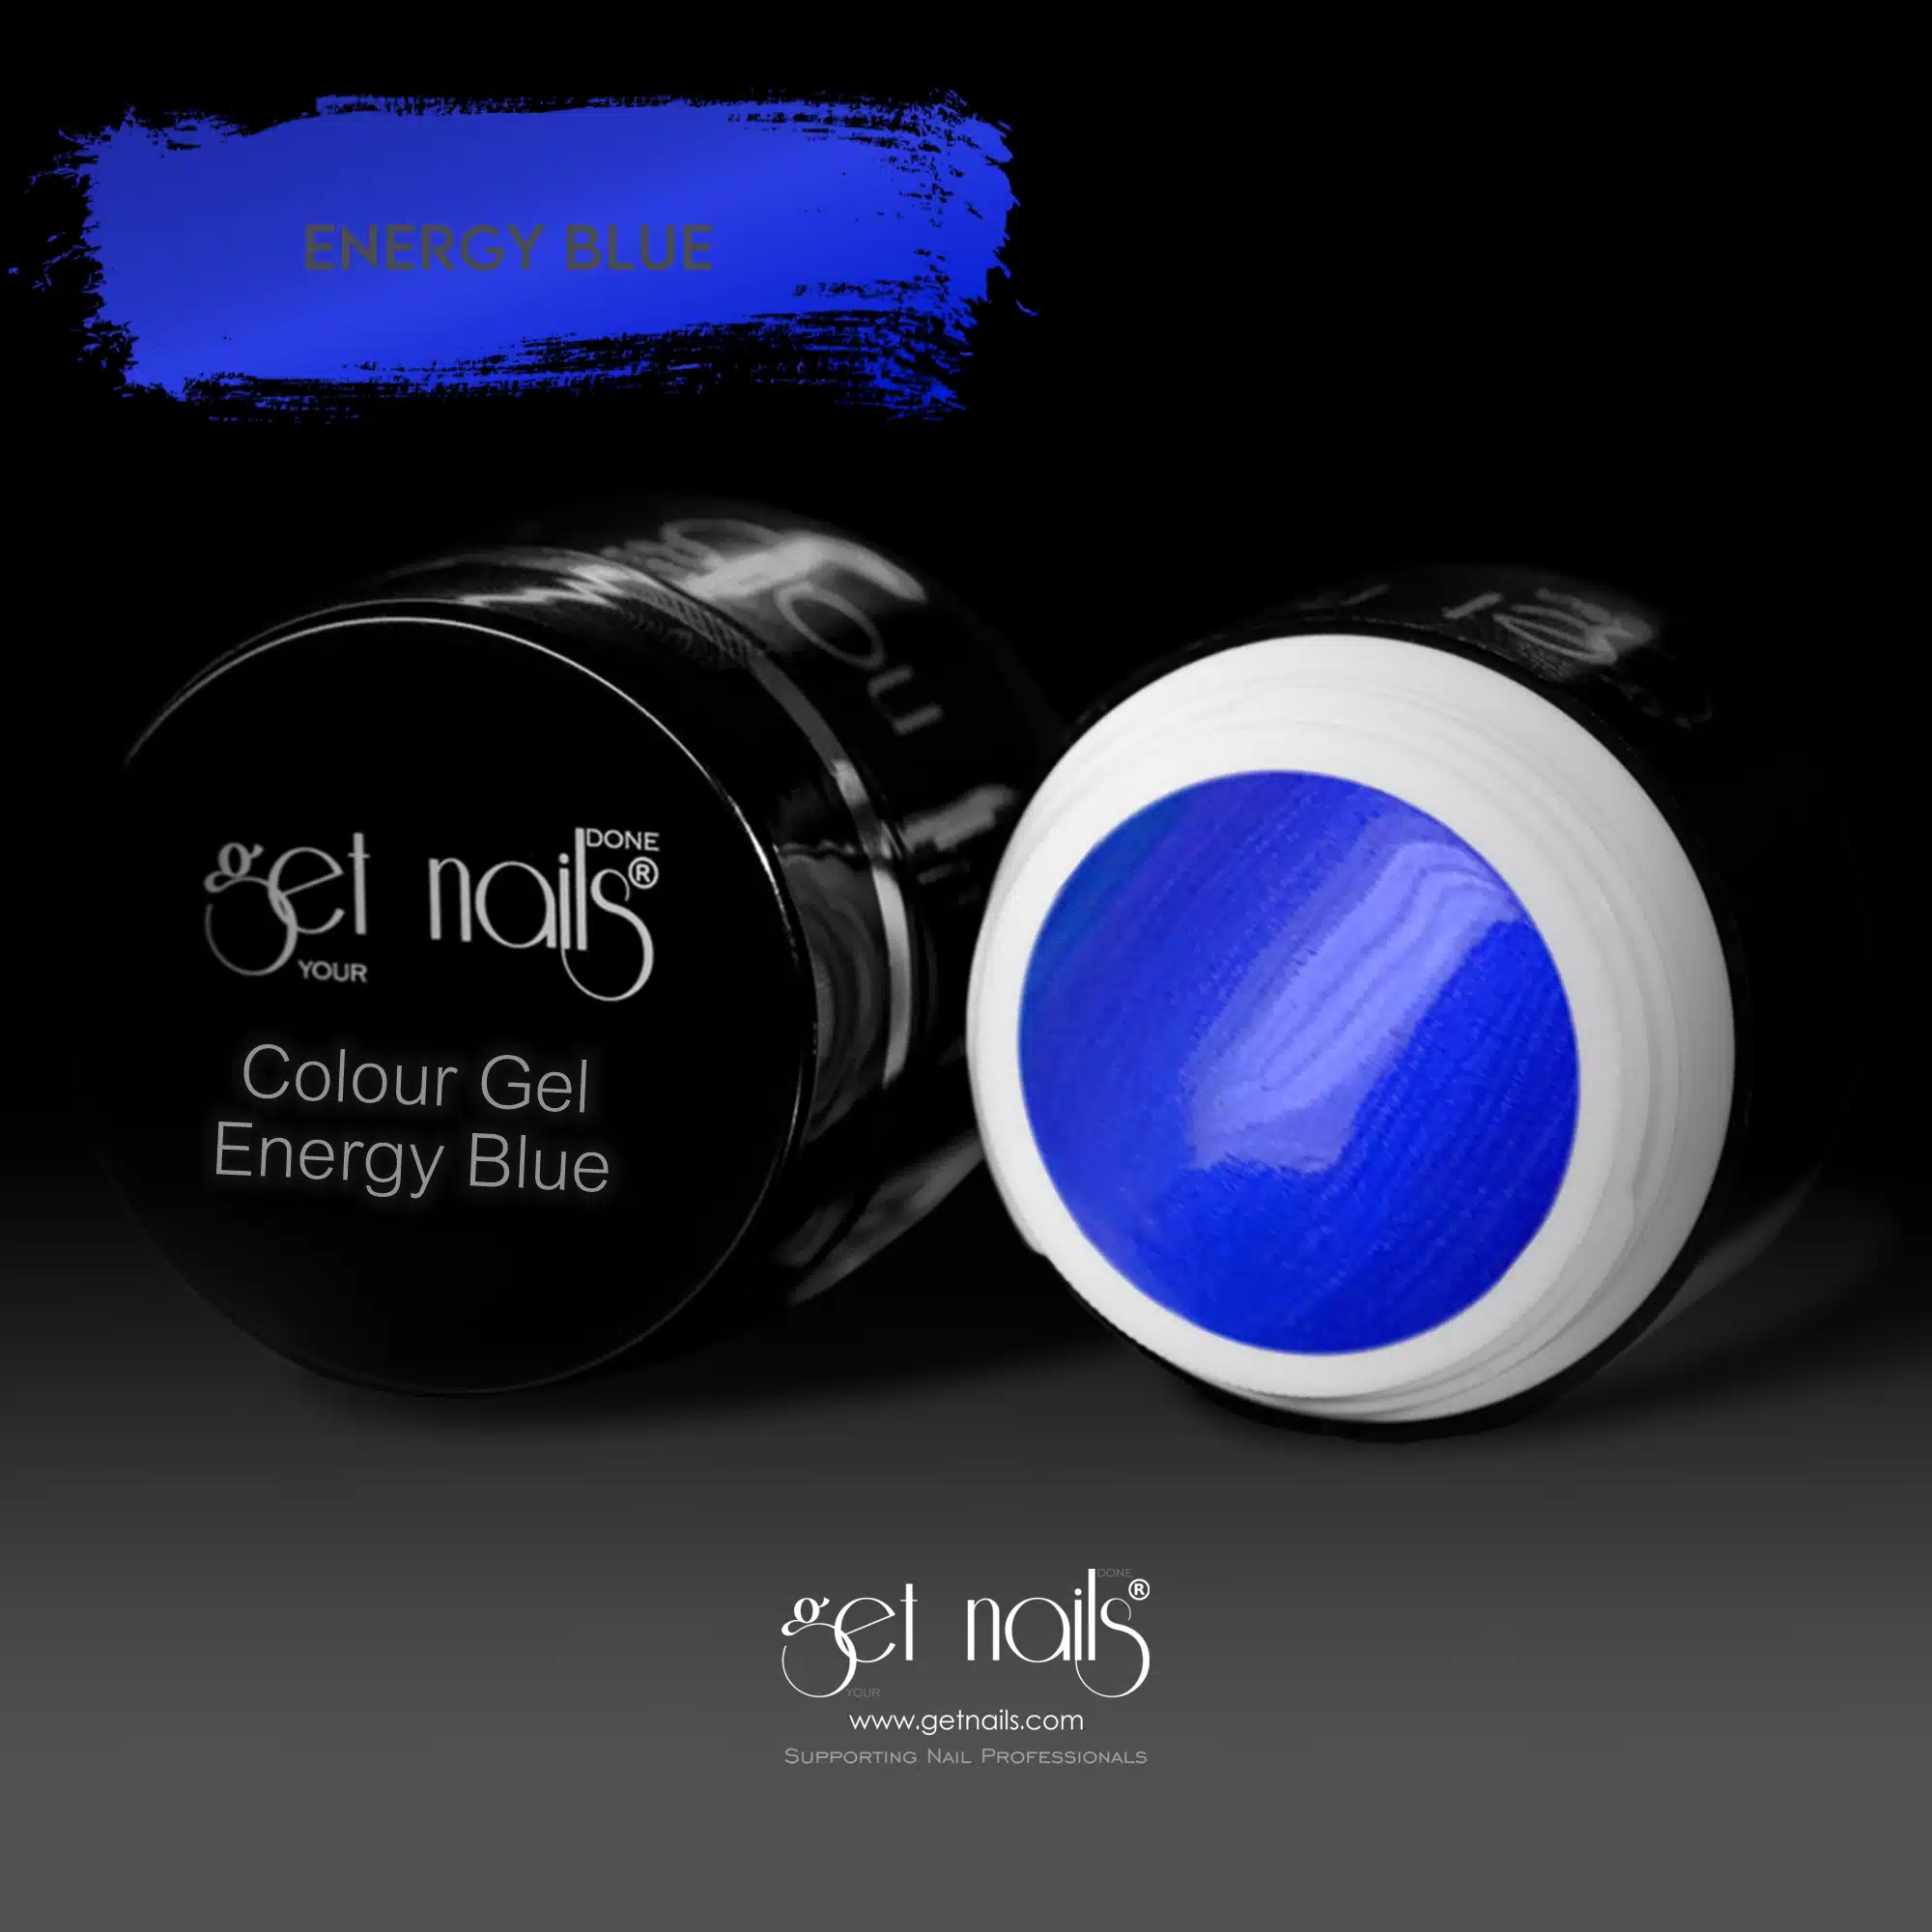 Get Nails Austria - Colour Gel Energy Blue 5g